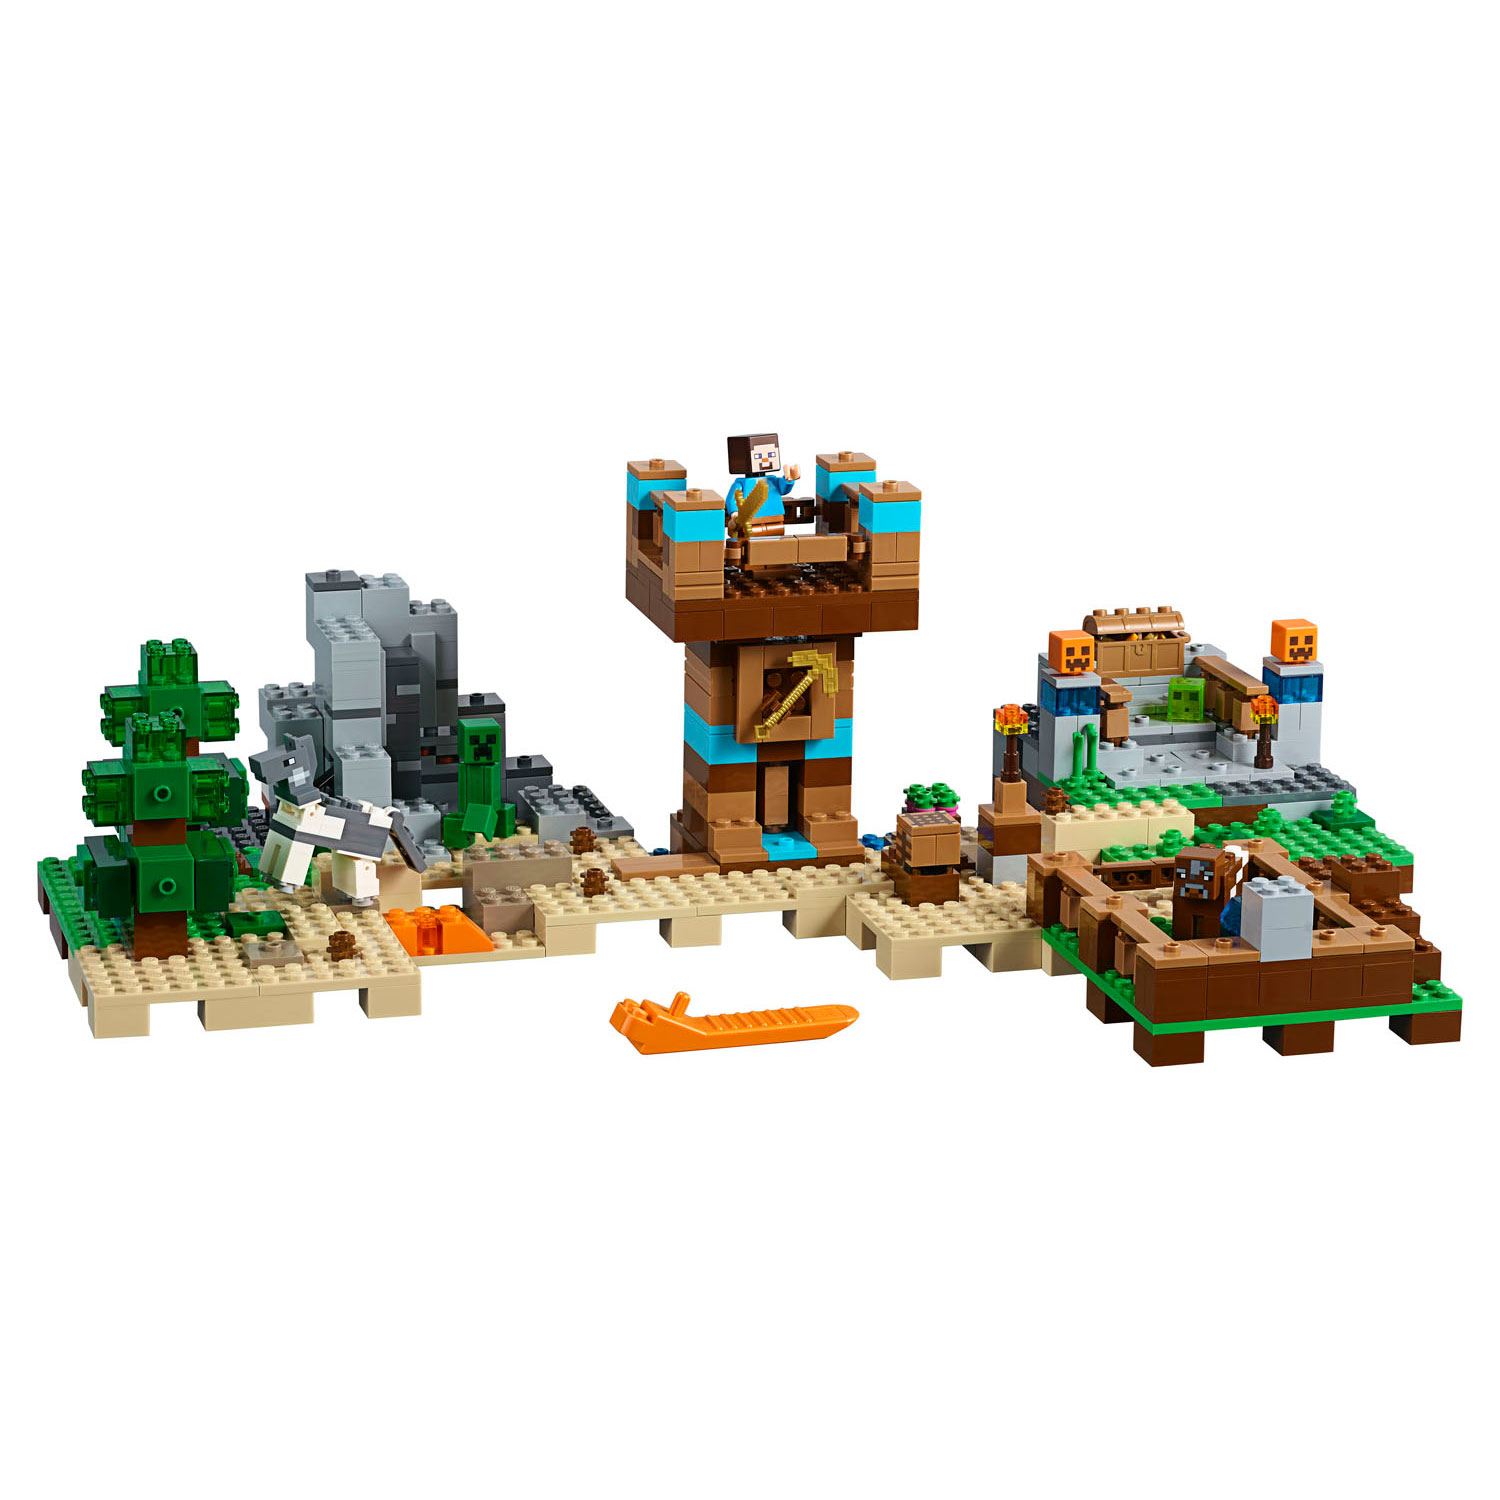 LEGO Minecraft 21135 De Crafting Box 2.0